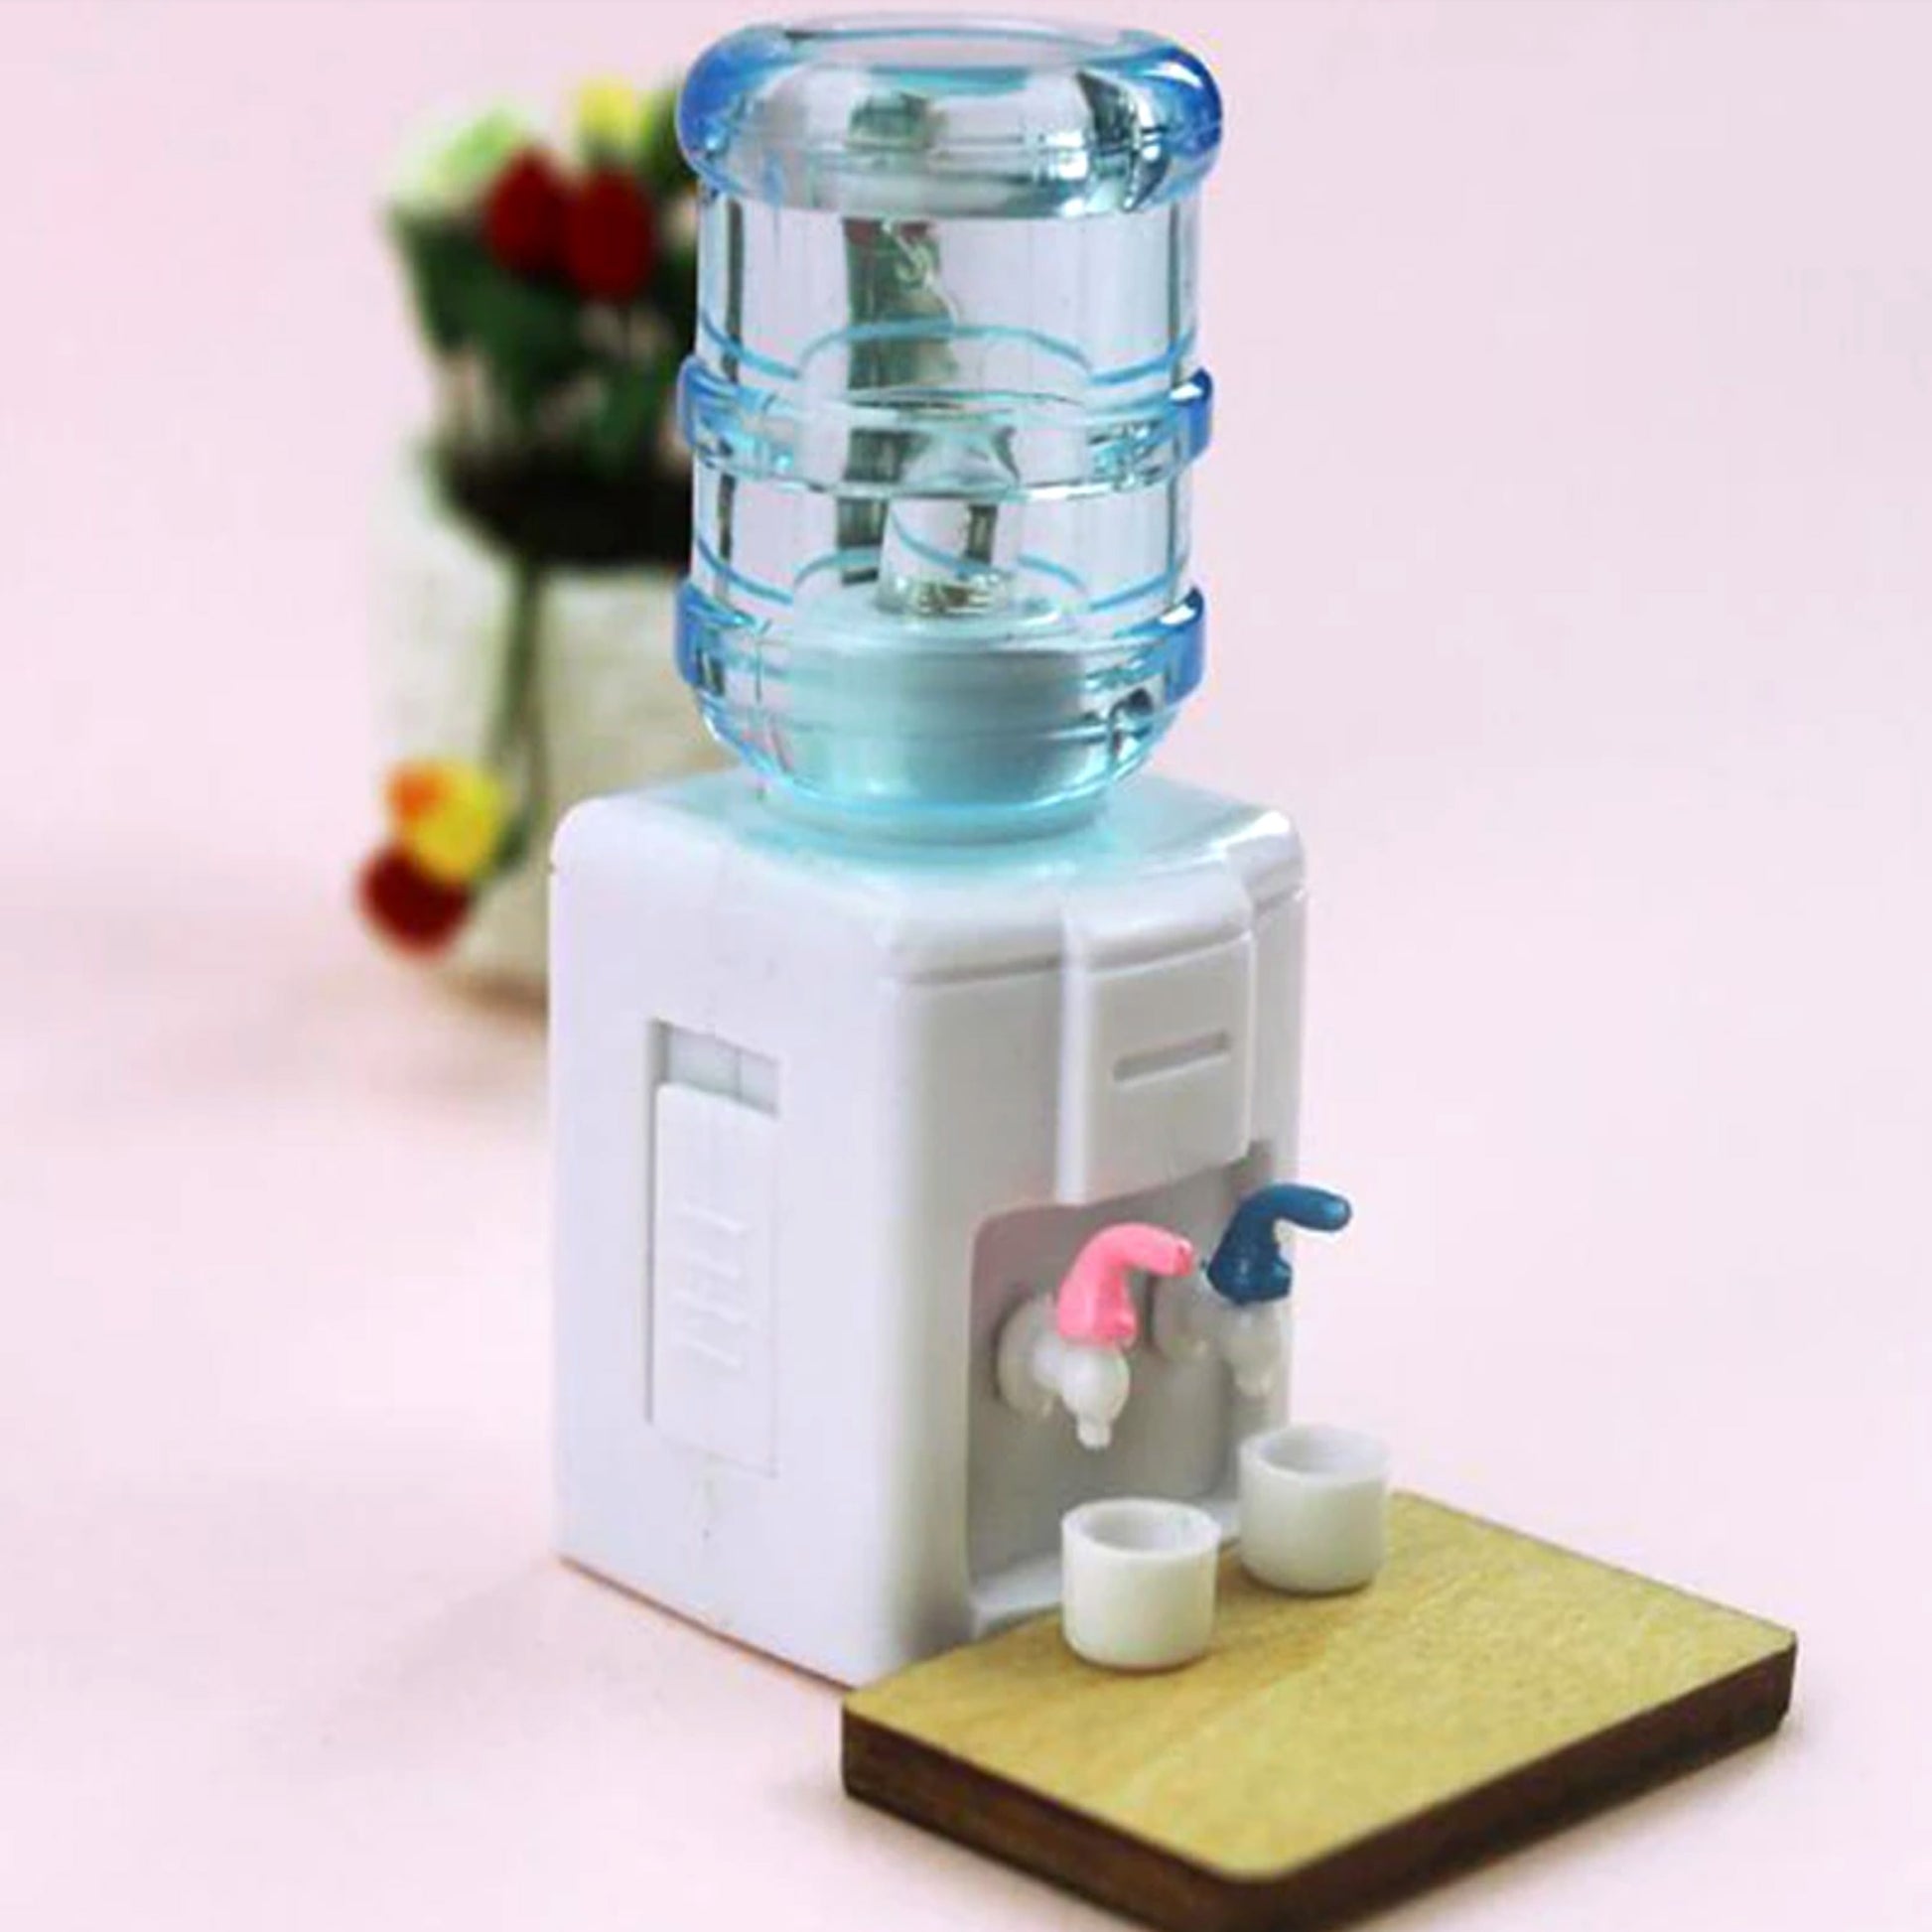 miniature dollhouse water cooler in situ